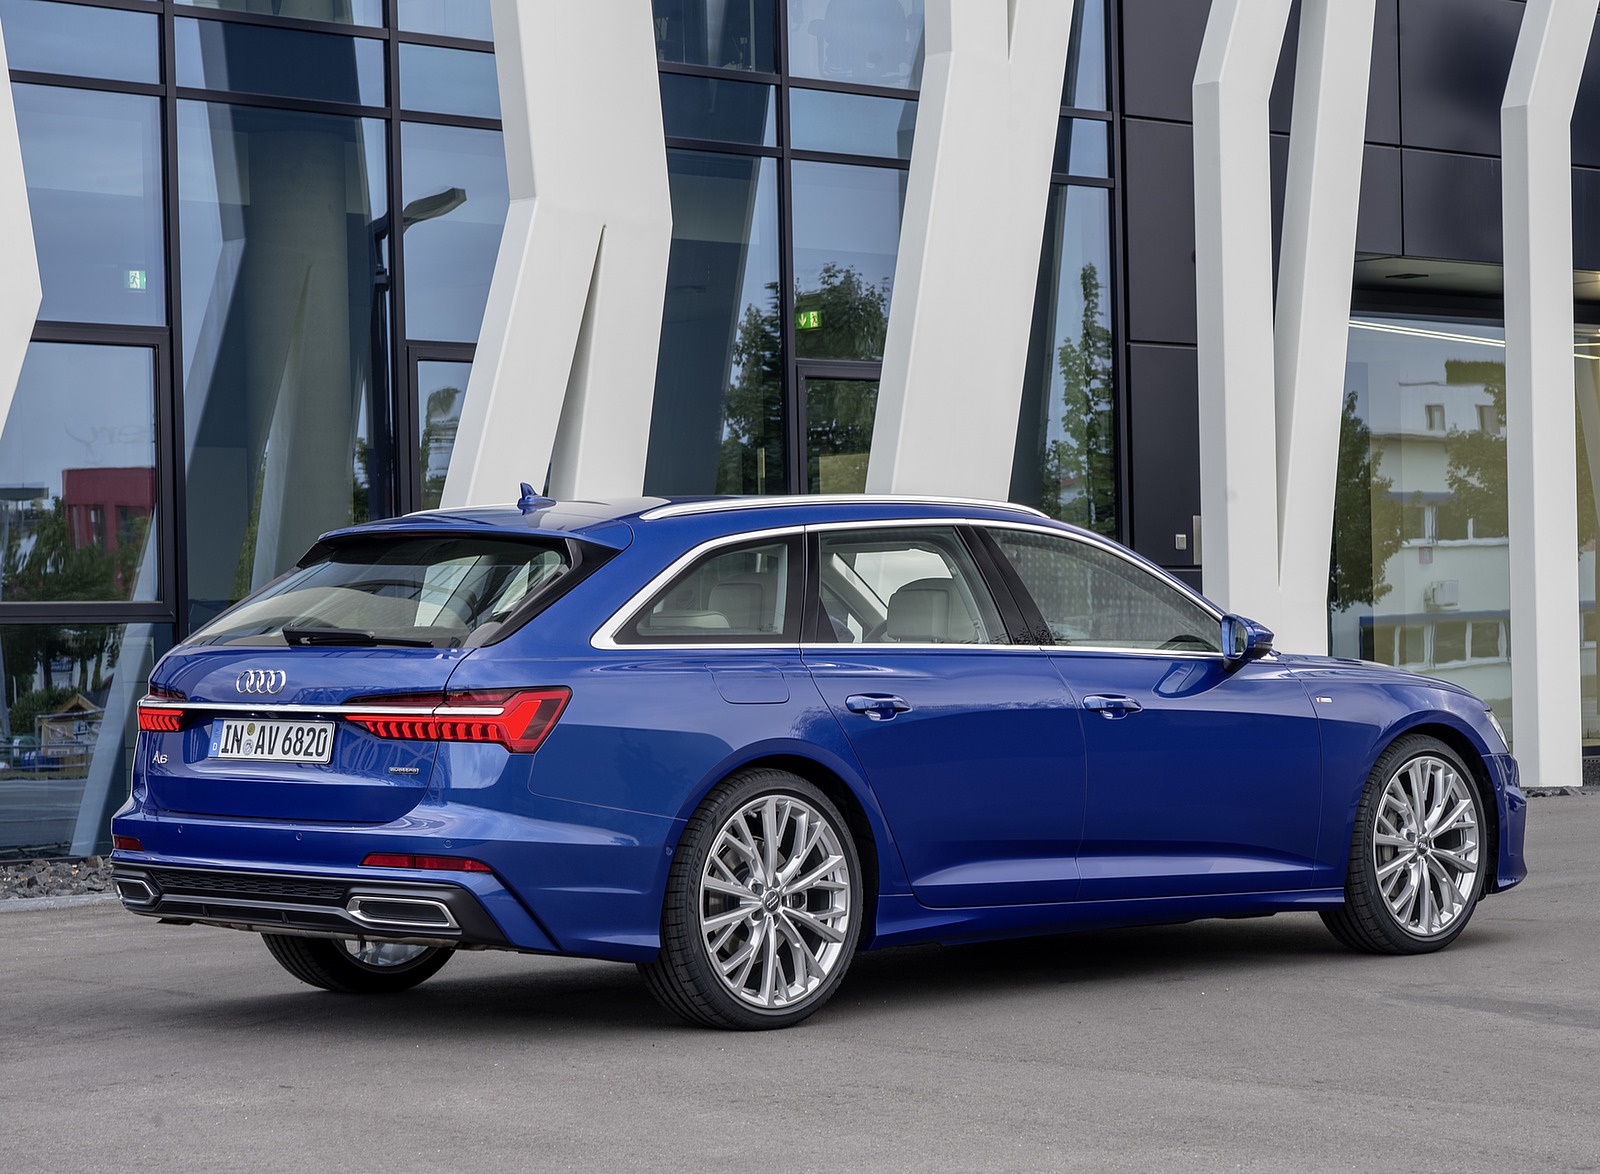 2019 Audi A6 Avant (Color: Sepang Blue) Rear Three-Quarter Wallpapers #36 of 86